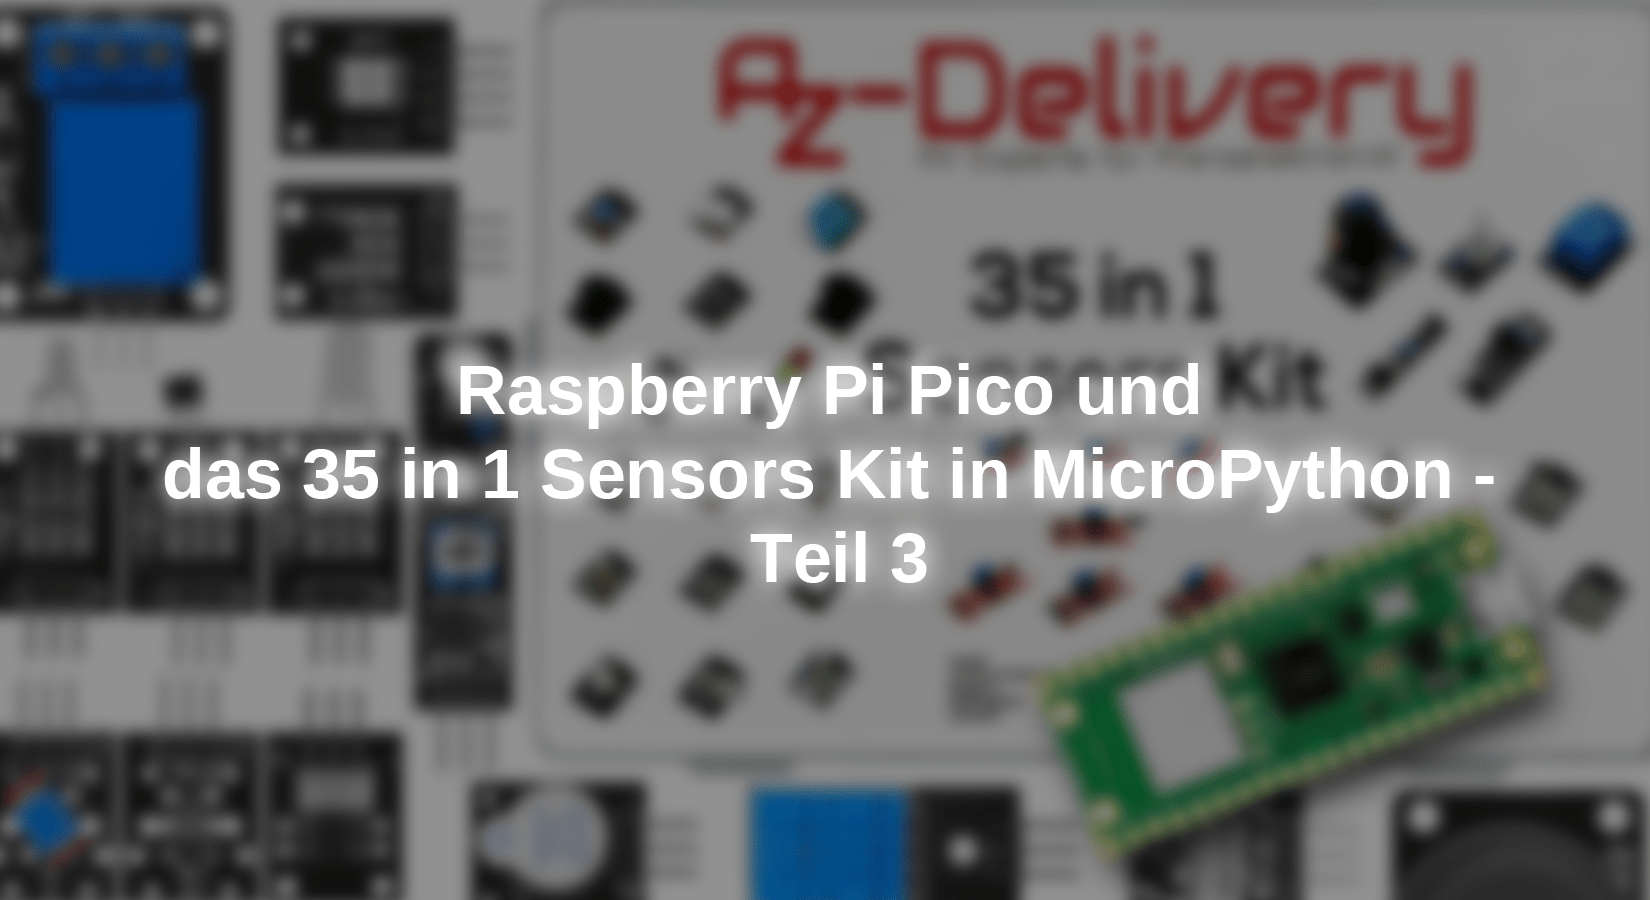 Raspberry Pi Pico W & DS18B20 Temperature Sensor (MicroPython Code)